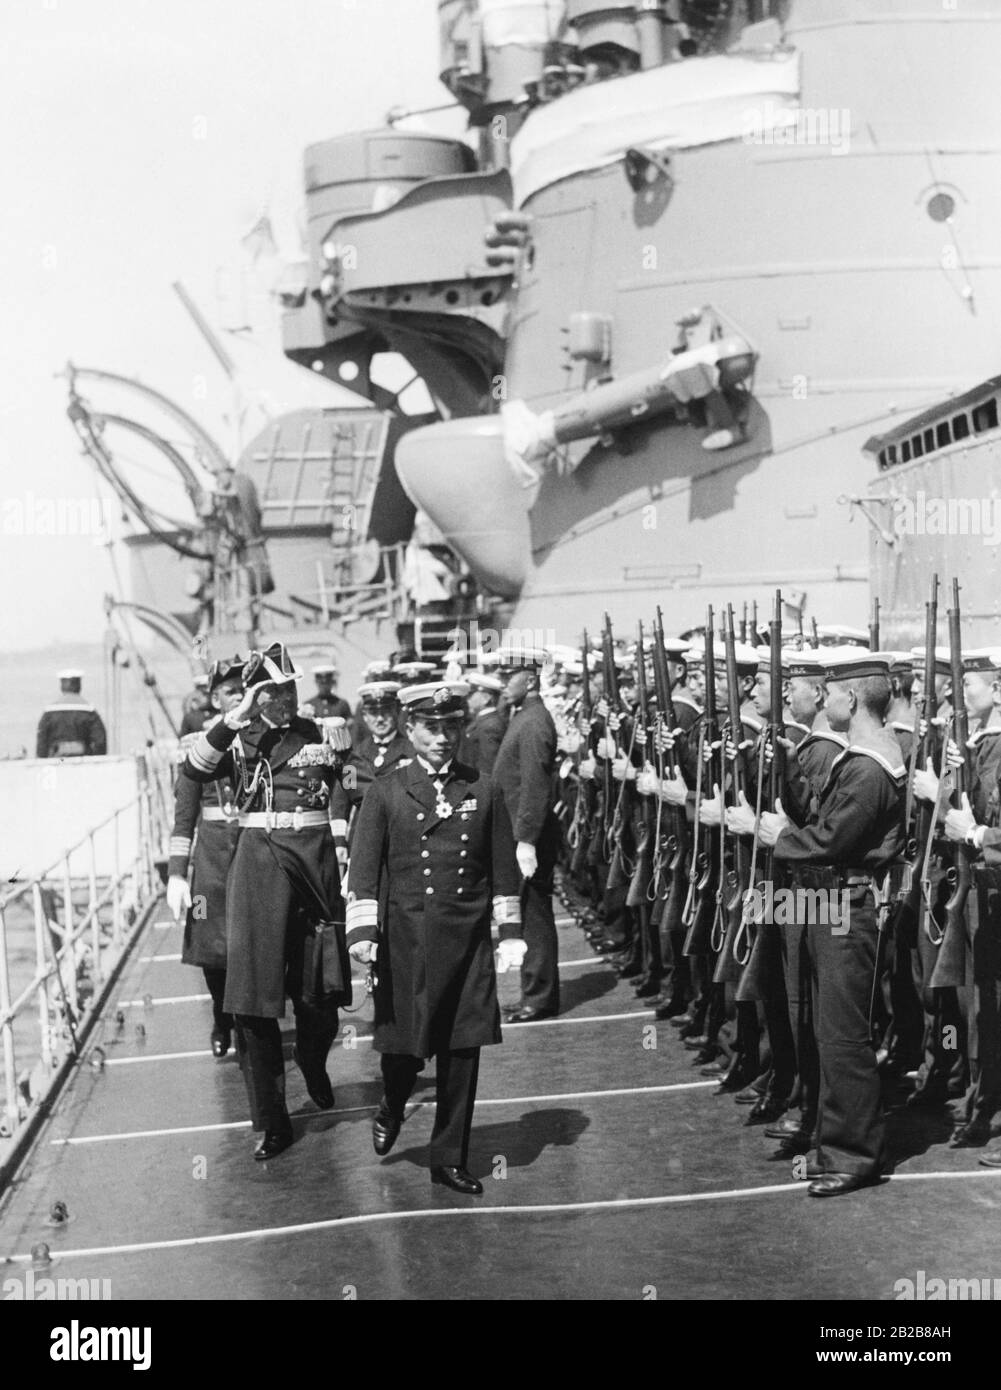 Lors d'une visite sur le croiseur Ashigara de la Marine impériale japonaise de Kiel, le vice-amiral Carls allemand et le contre-amiral Kobayashi japonais inspectent l'équipage du navire. Banque D'Images